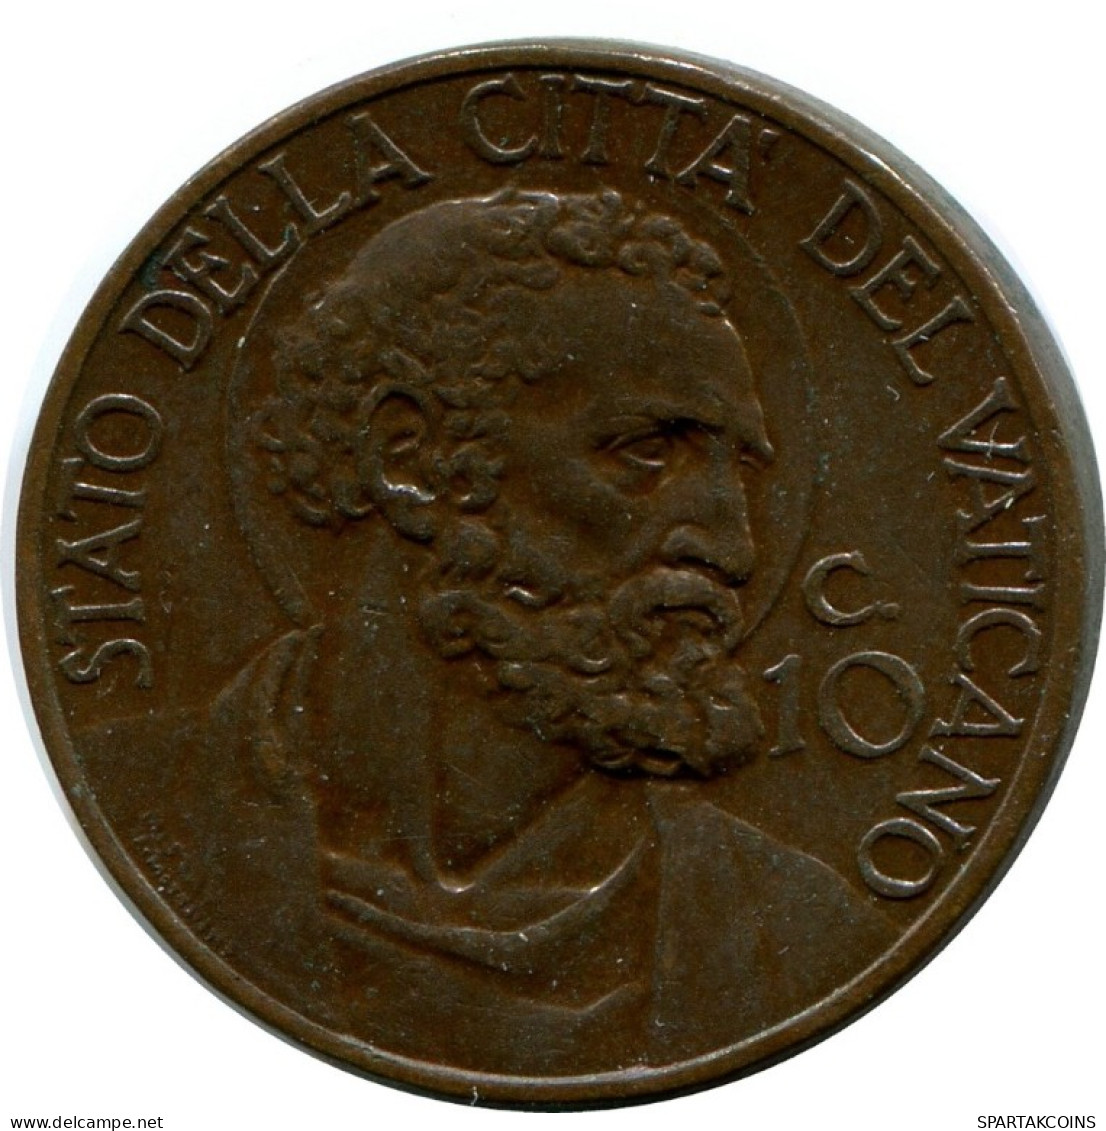 10 CENTESIMI 1937 VATICANO VATICAN Moneda Pius XI (1922-1939) #AH347.16.E.A - Vaticano (Ciudad Del)